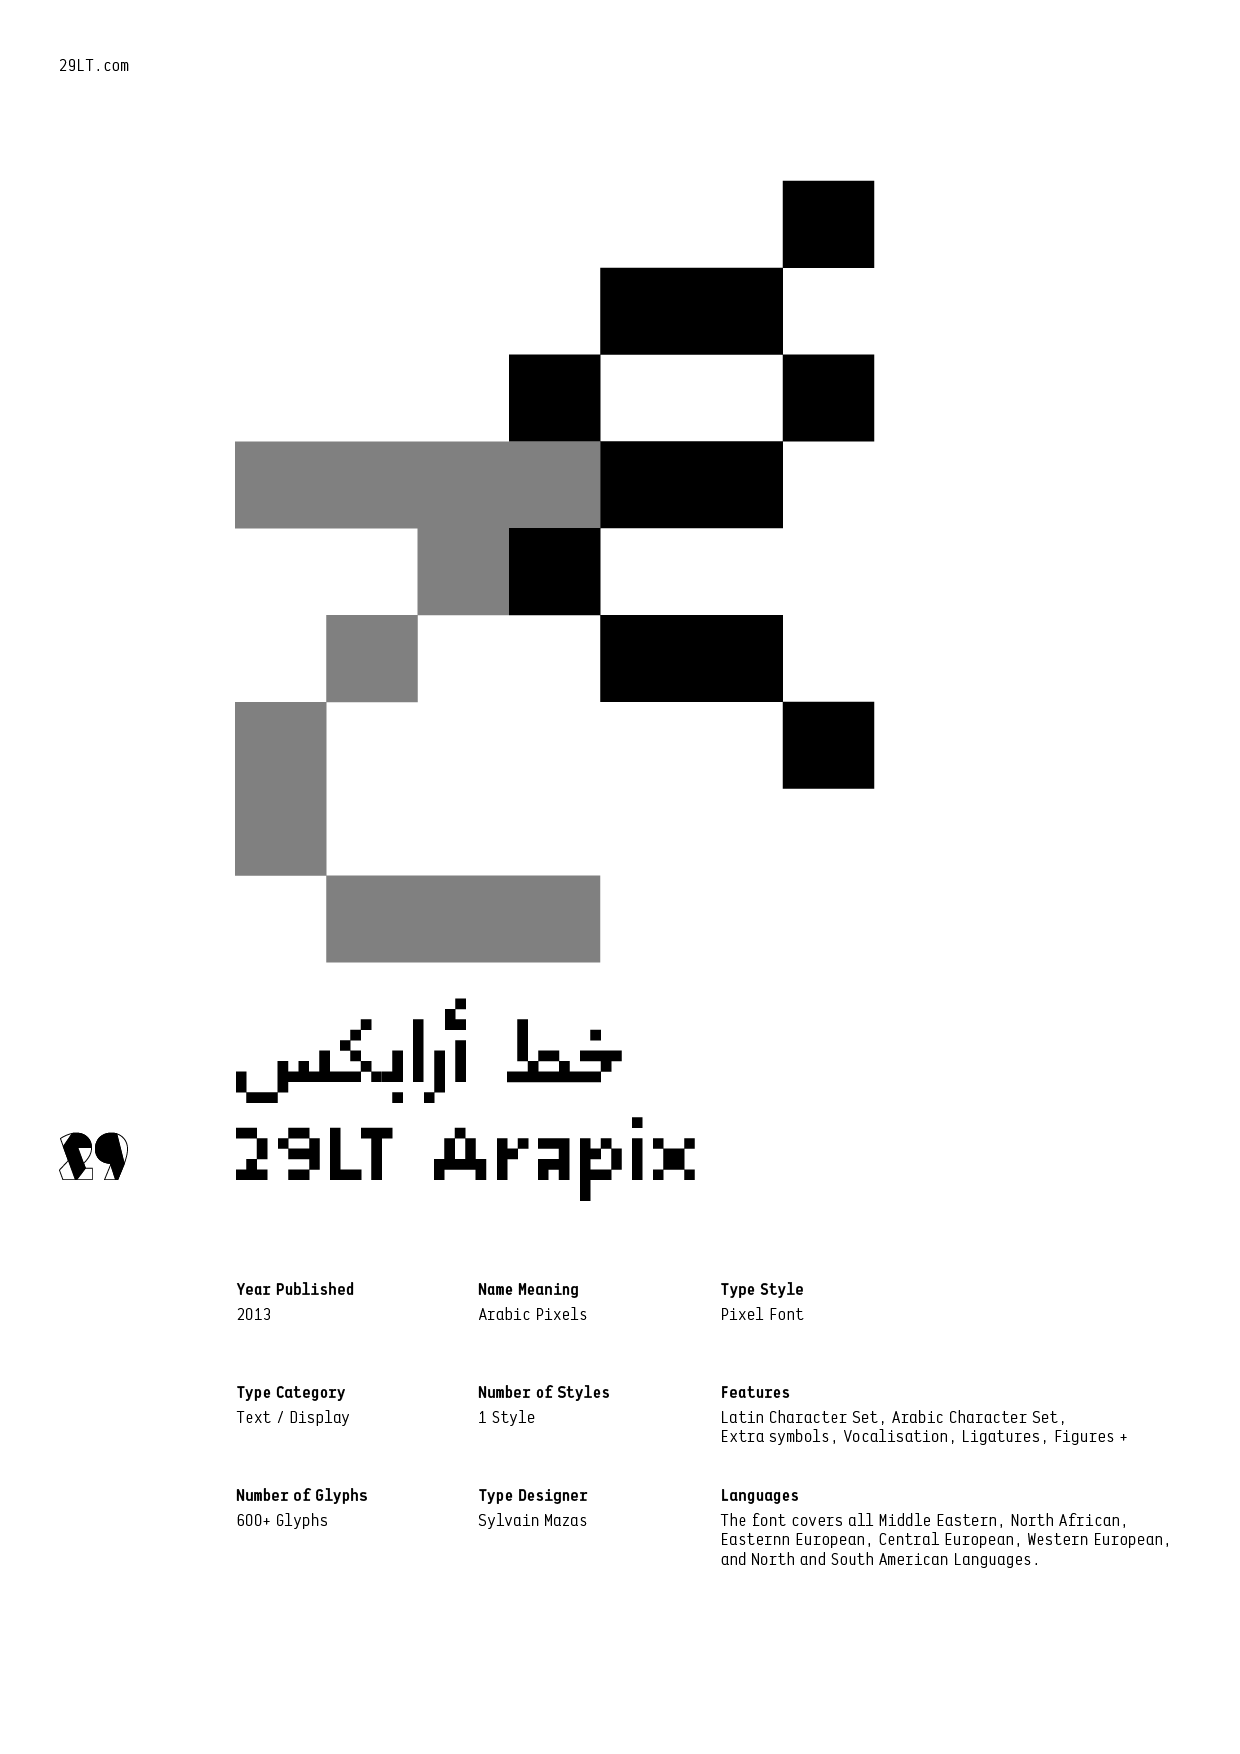 29LT Arapix-PDF1